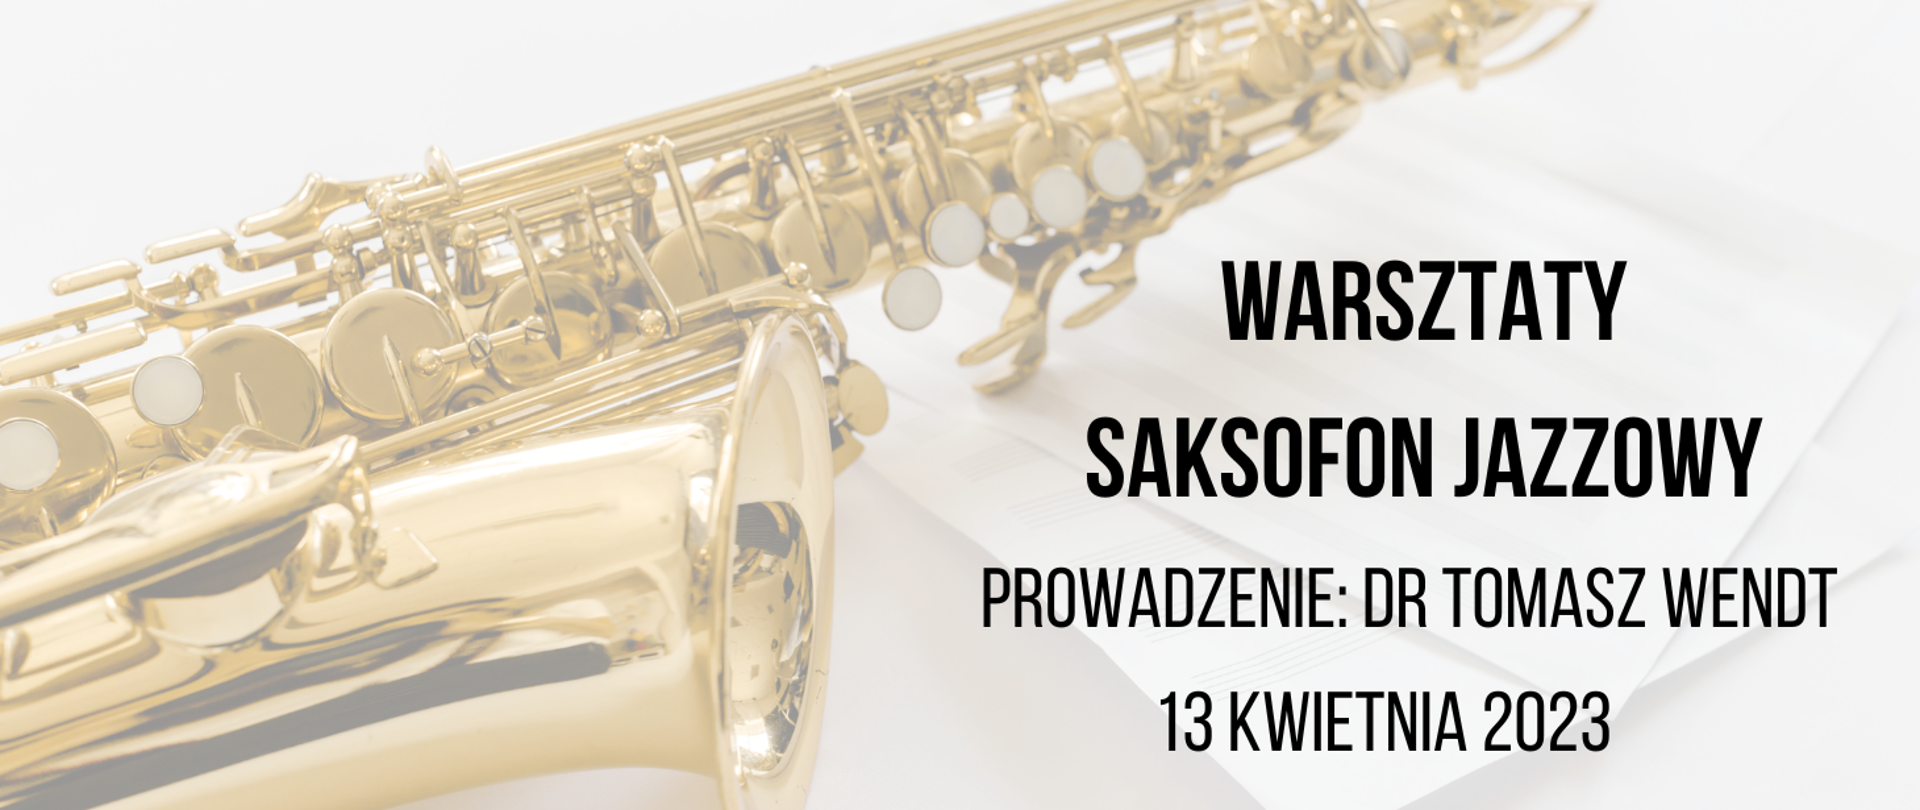 Złoty saksofon leżący na nutach. Z prawej strony tekst zapisany czarnymi literami: Warsztaty, saksofn jazzowy, prowadzenie: dr Tomasz Wendt 13 kwietnia 2023.